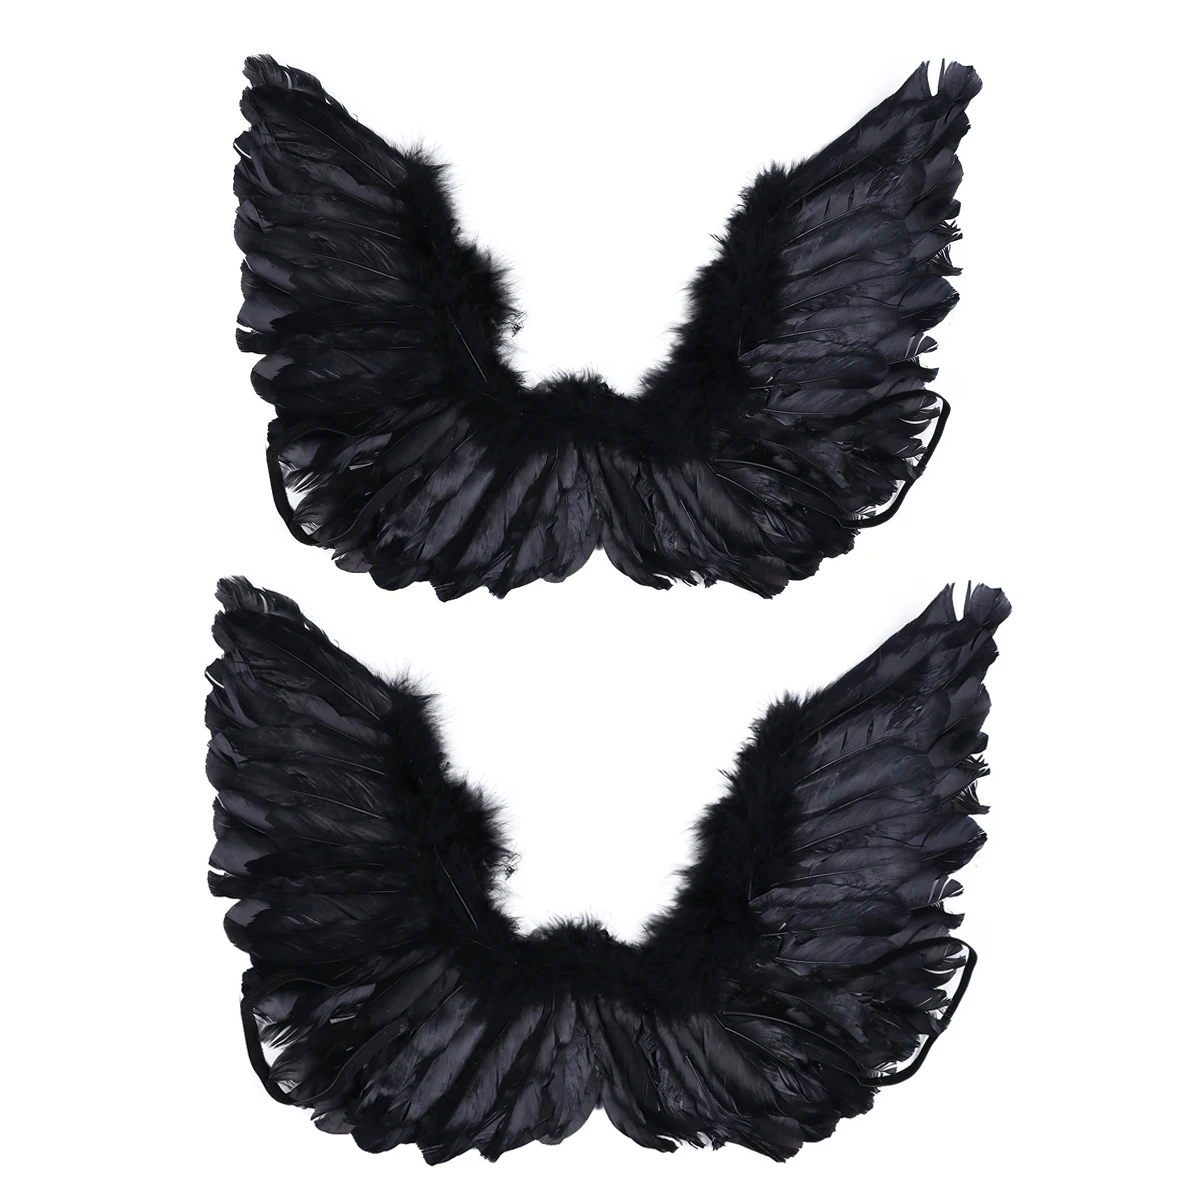 TiaoBug/карнавальный костюм для взрослых и детей, черный ангел, крылья феи, перо, Танцевальная вечеринка, маскарадный костюм для сценического шоу, карнавальный костюм на Хэллоуин